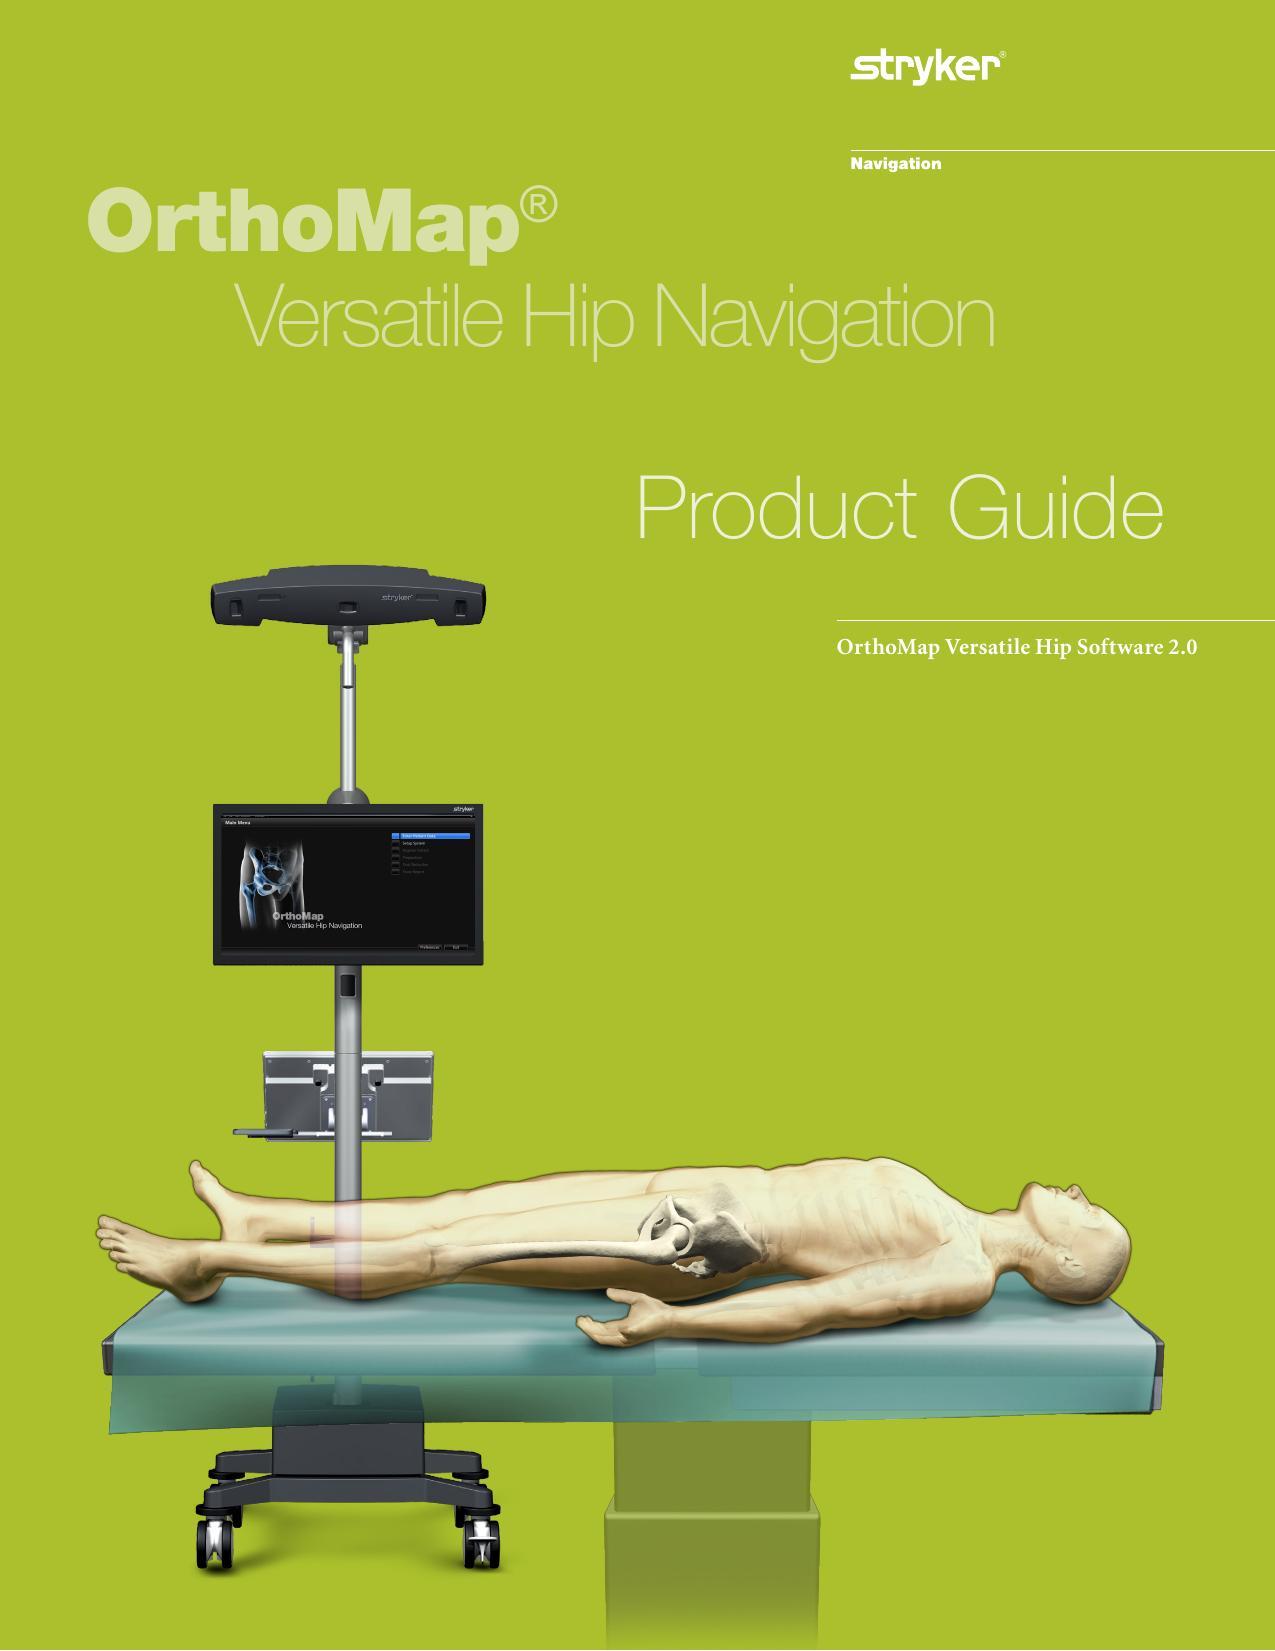 stryker-navigation-system-orthomap-versatile-hip-software-20-user-manual.pdf